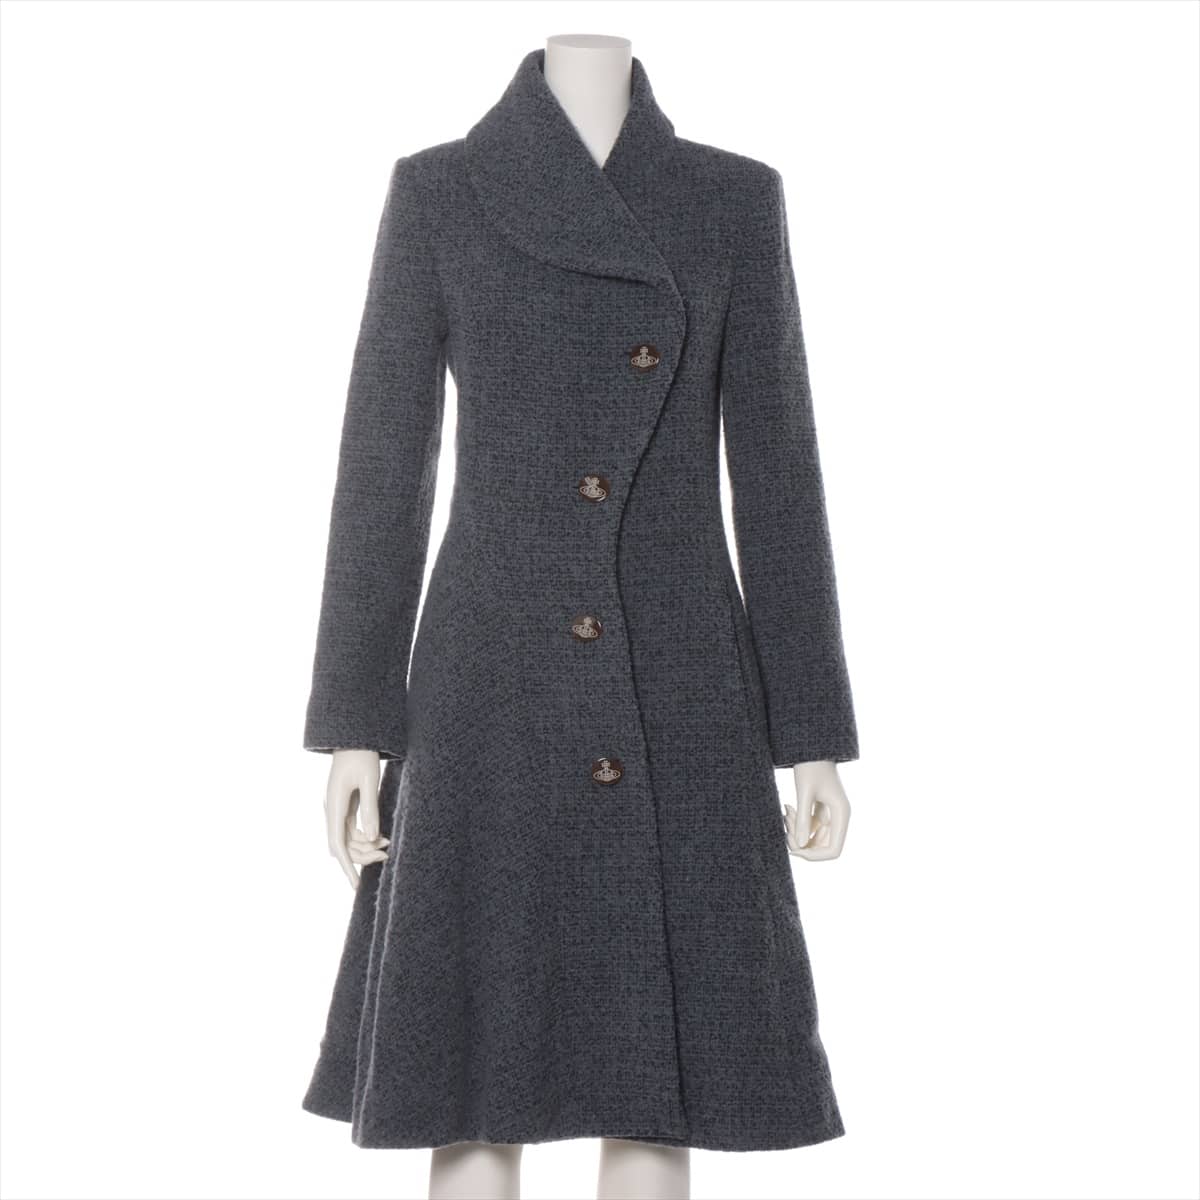 Vivienne Westwood RED LABEL Wool & Nylon coats 1 Ladies' Grey  16-01-682012